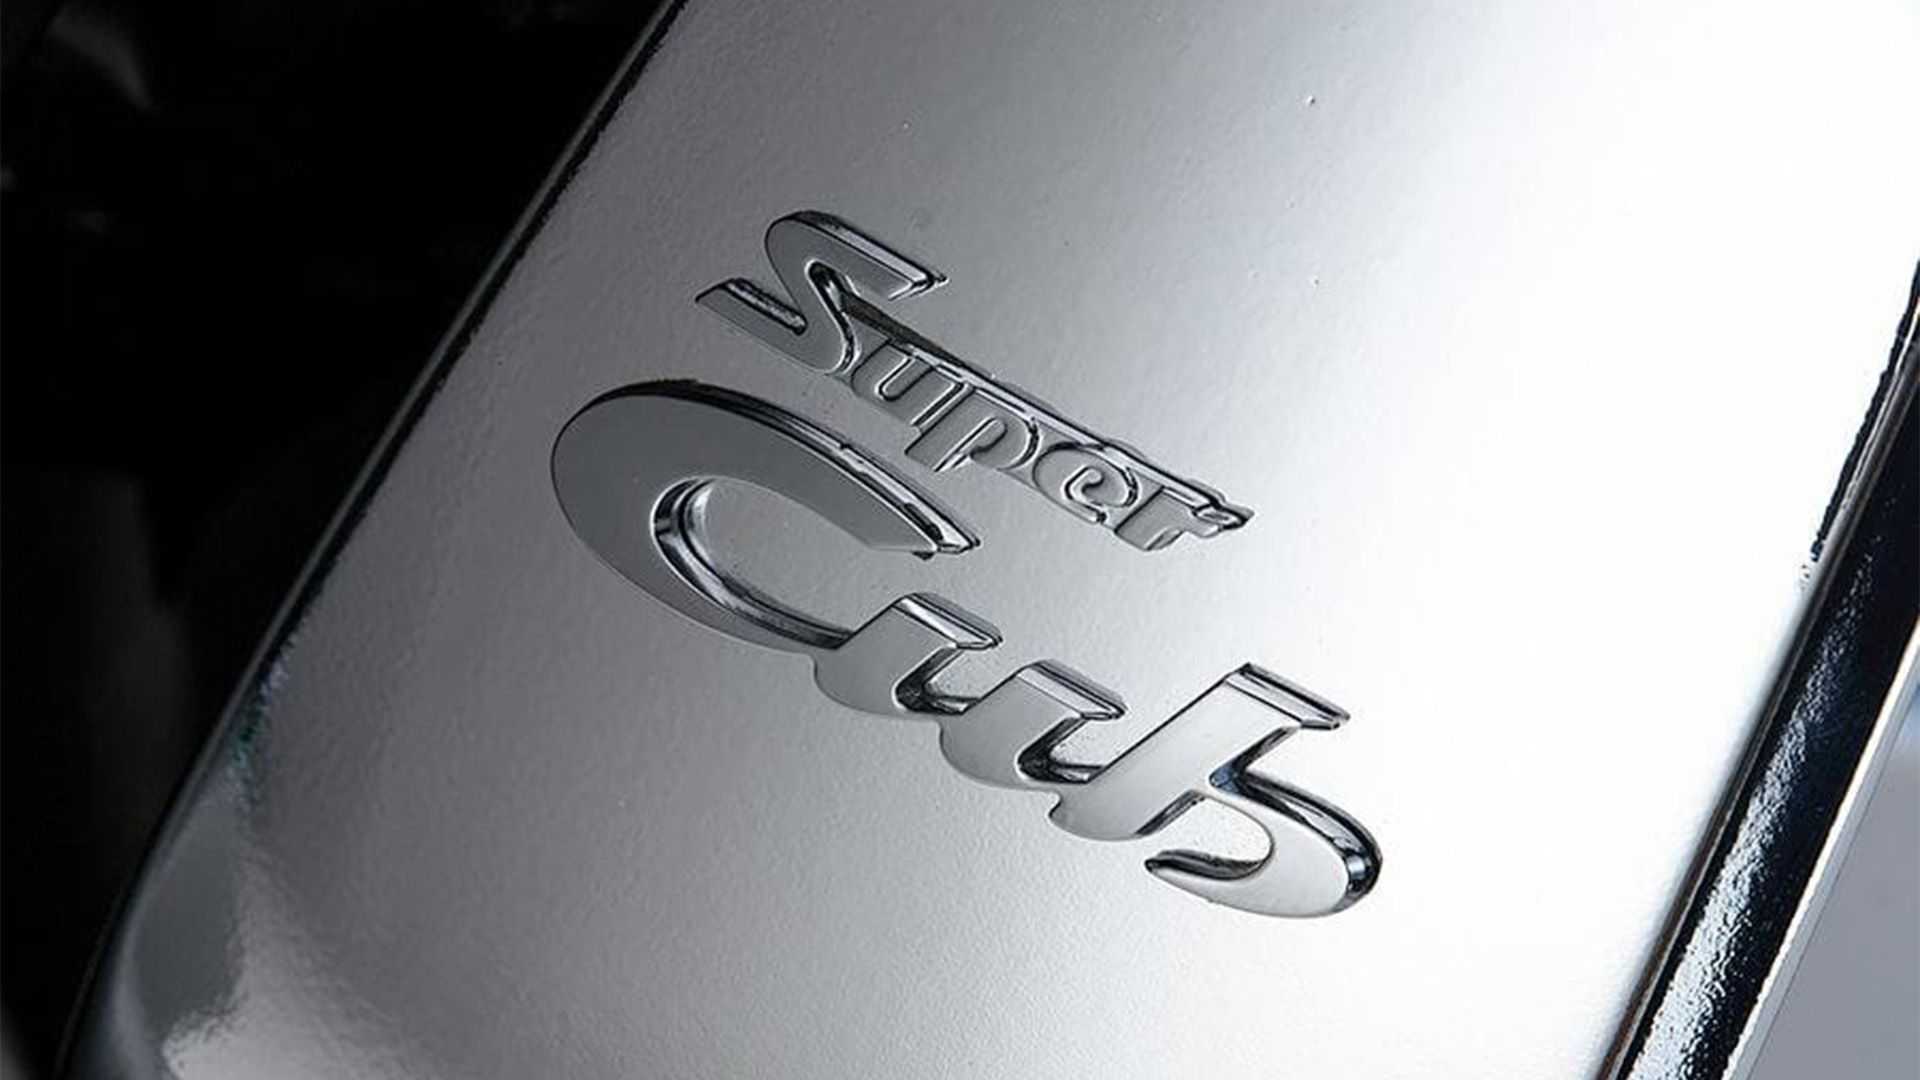 New Honda Super Cub 125 Disney Edition Makes Official Debut - close-up